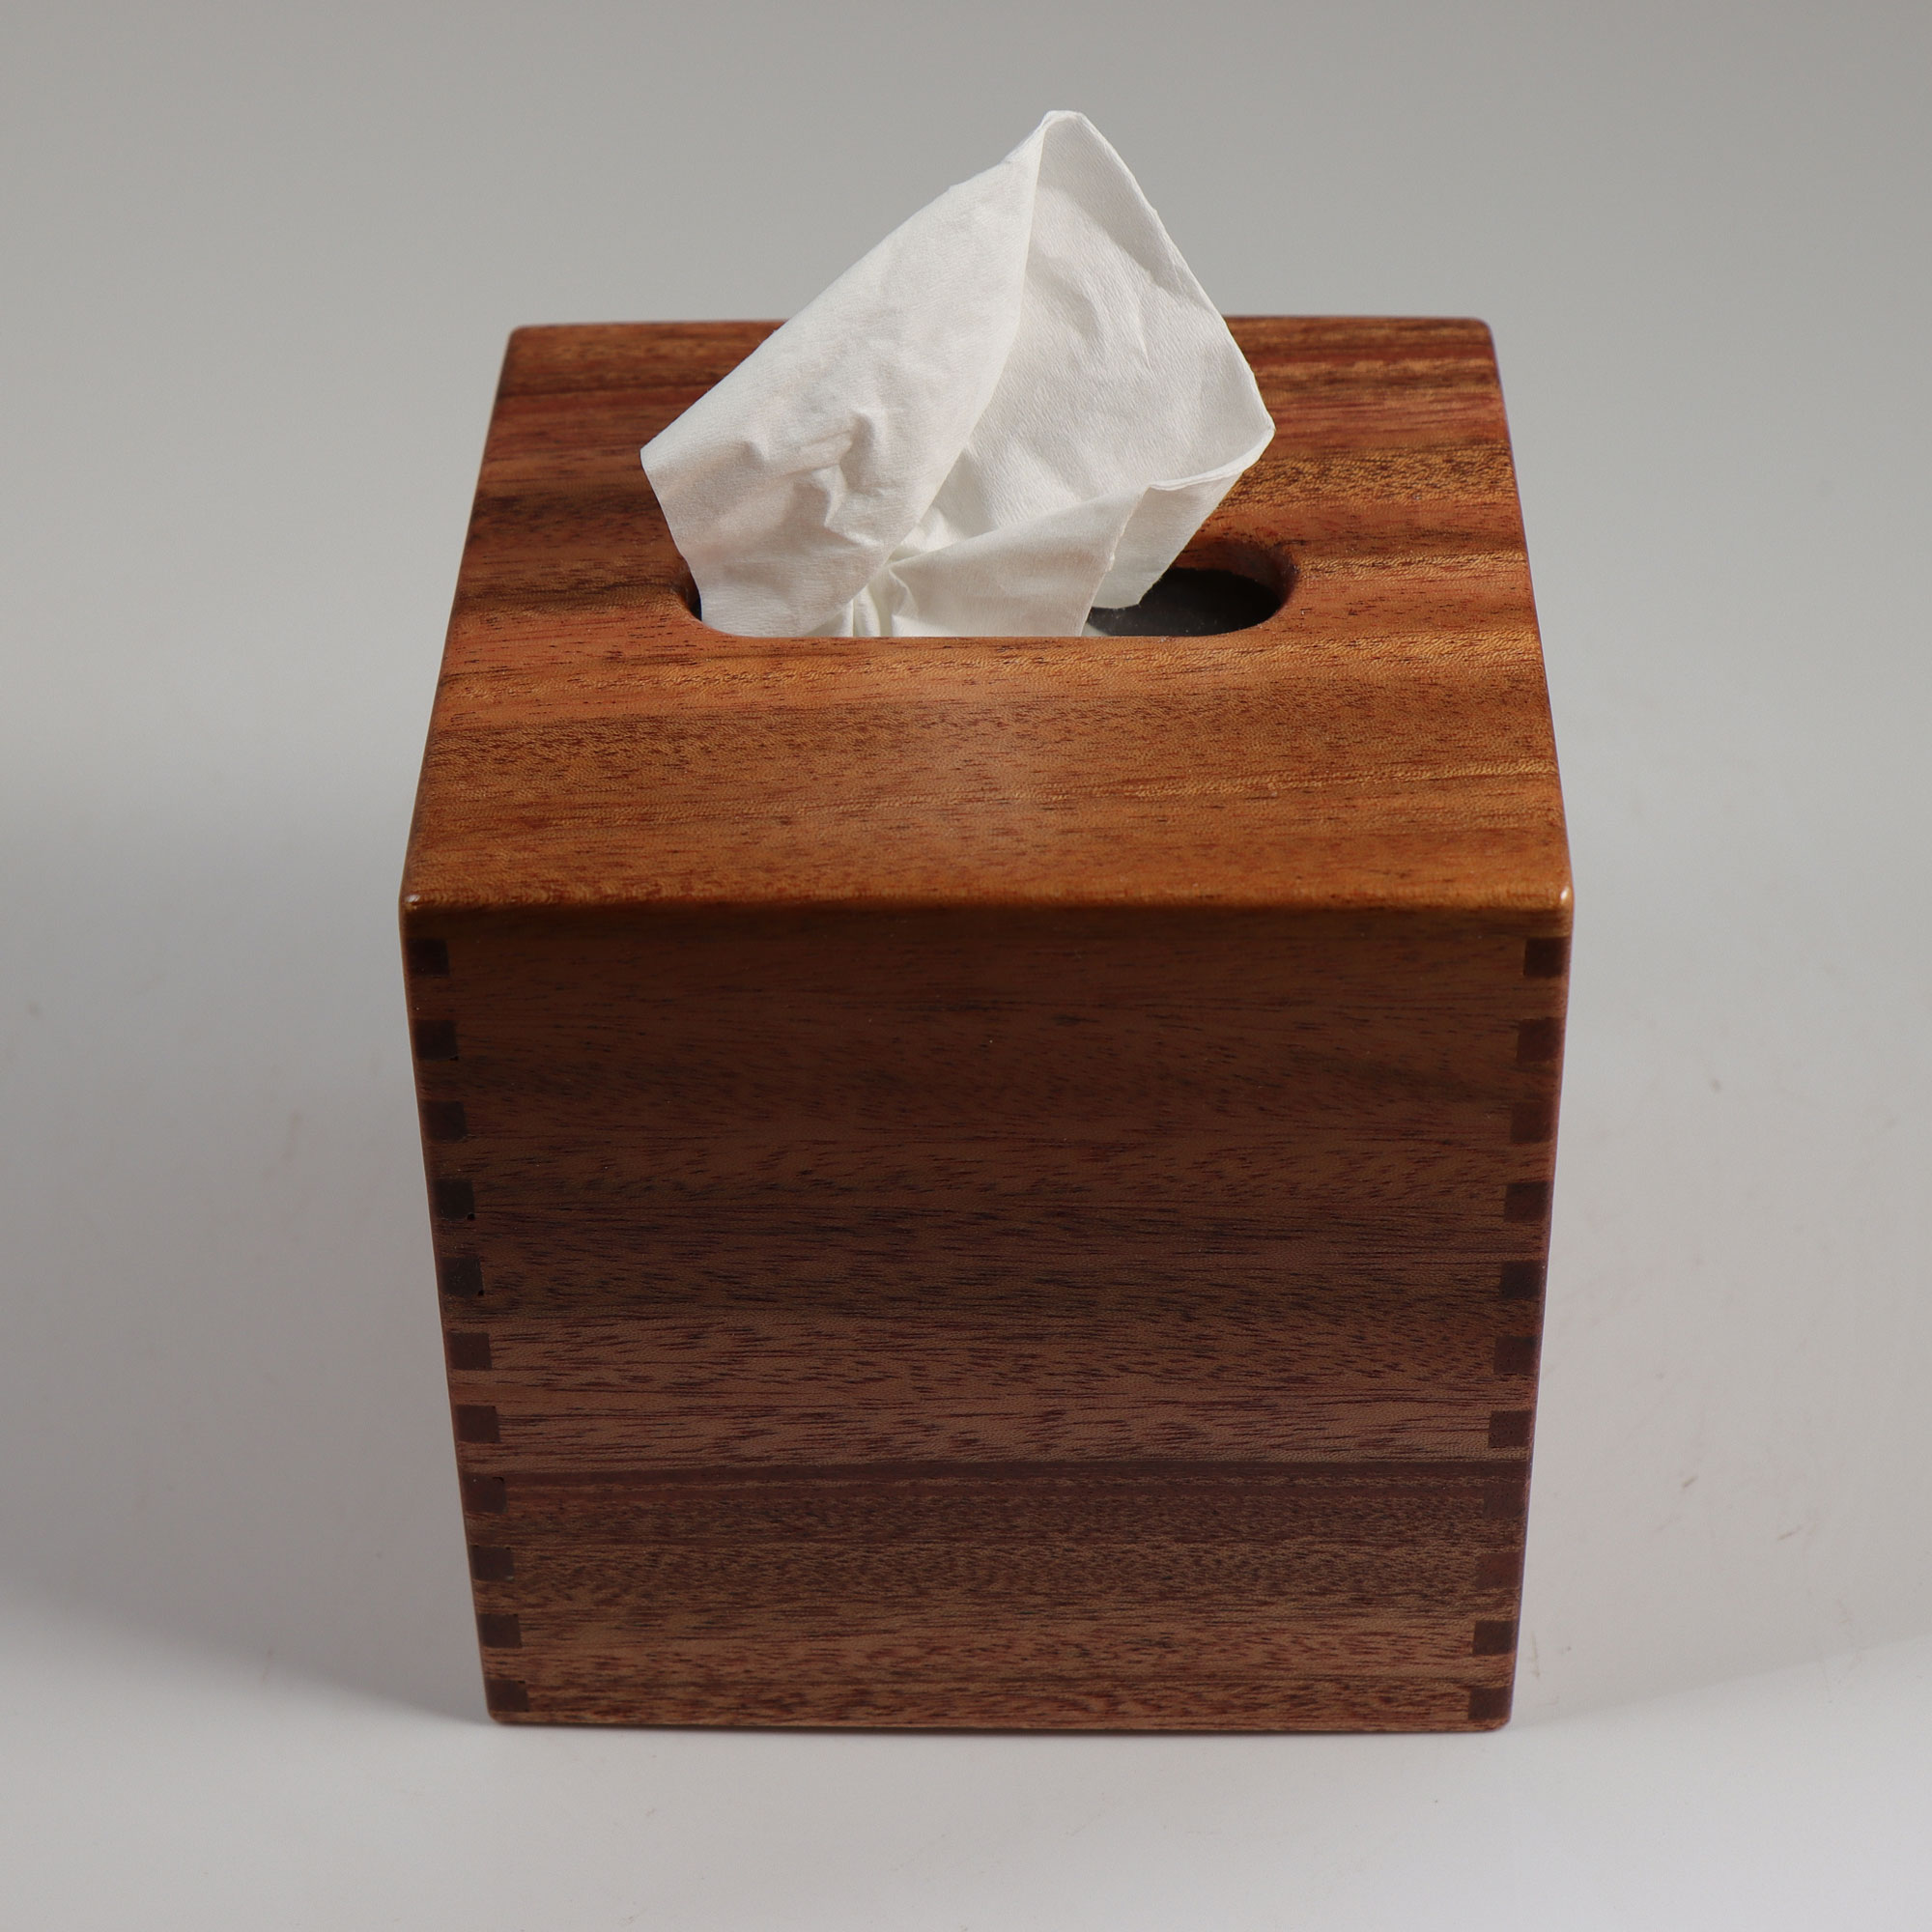 small tissue box